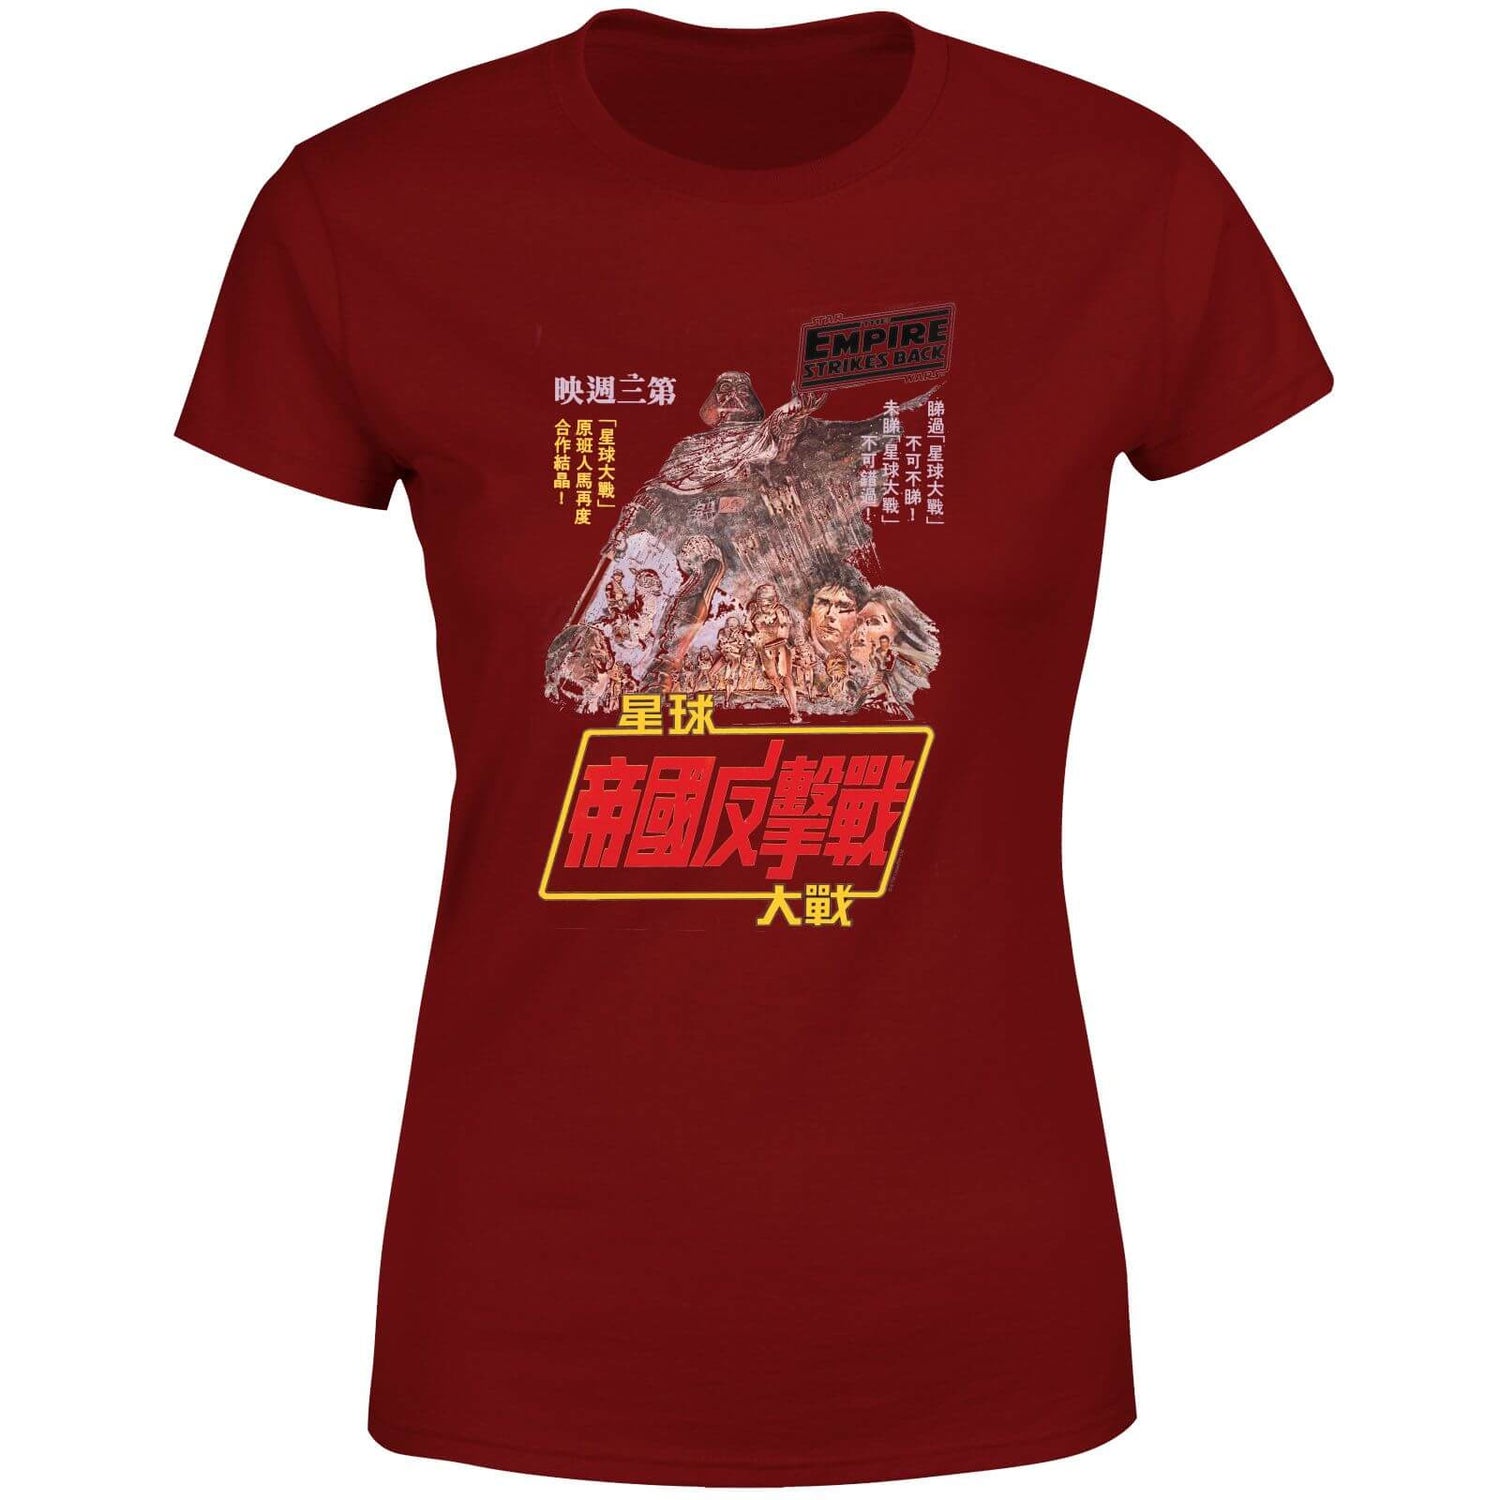 Star Wars Empire Strikes Back Kanji Poster Women's T-Shirt - Burgundy